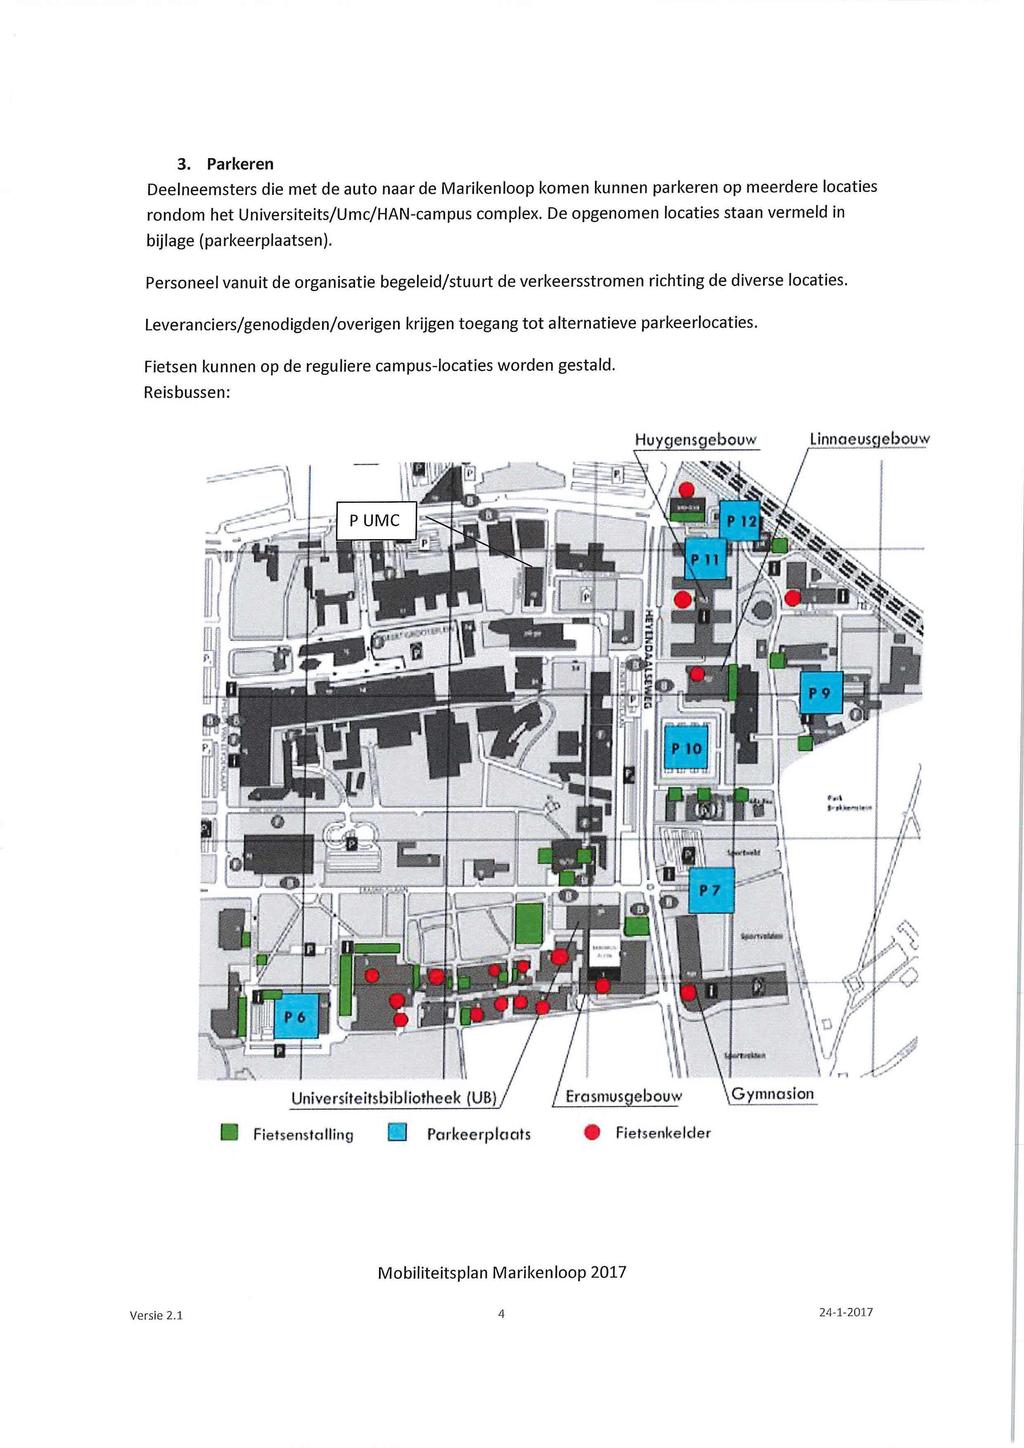 3. Parkeren Deelneemsters die met de auto naar de Marikenloop komen kunnen parkeren op meerdere locaties rondom het Universiteits/Umc/HAN-campus complex.